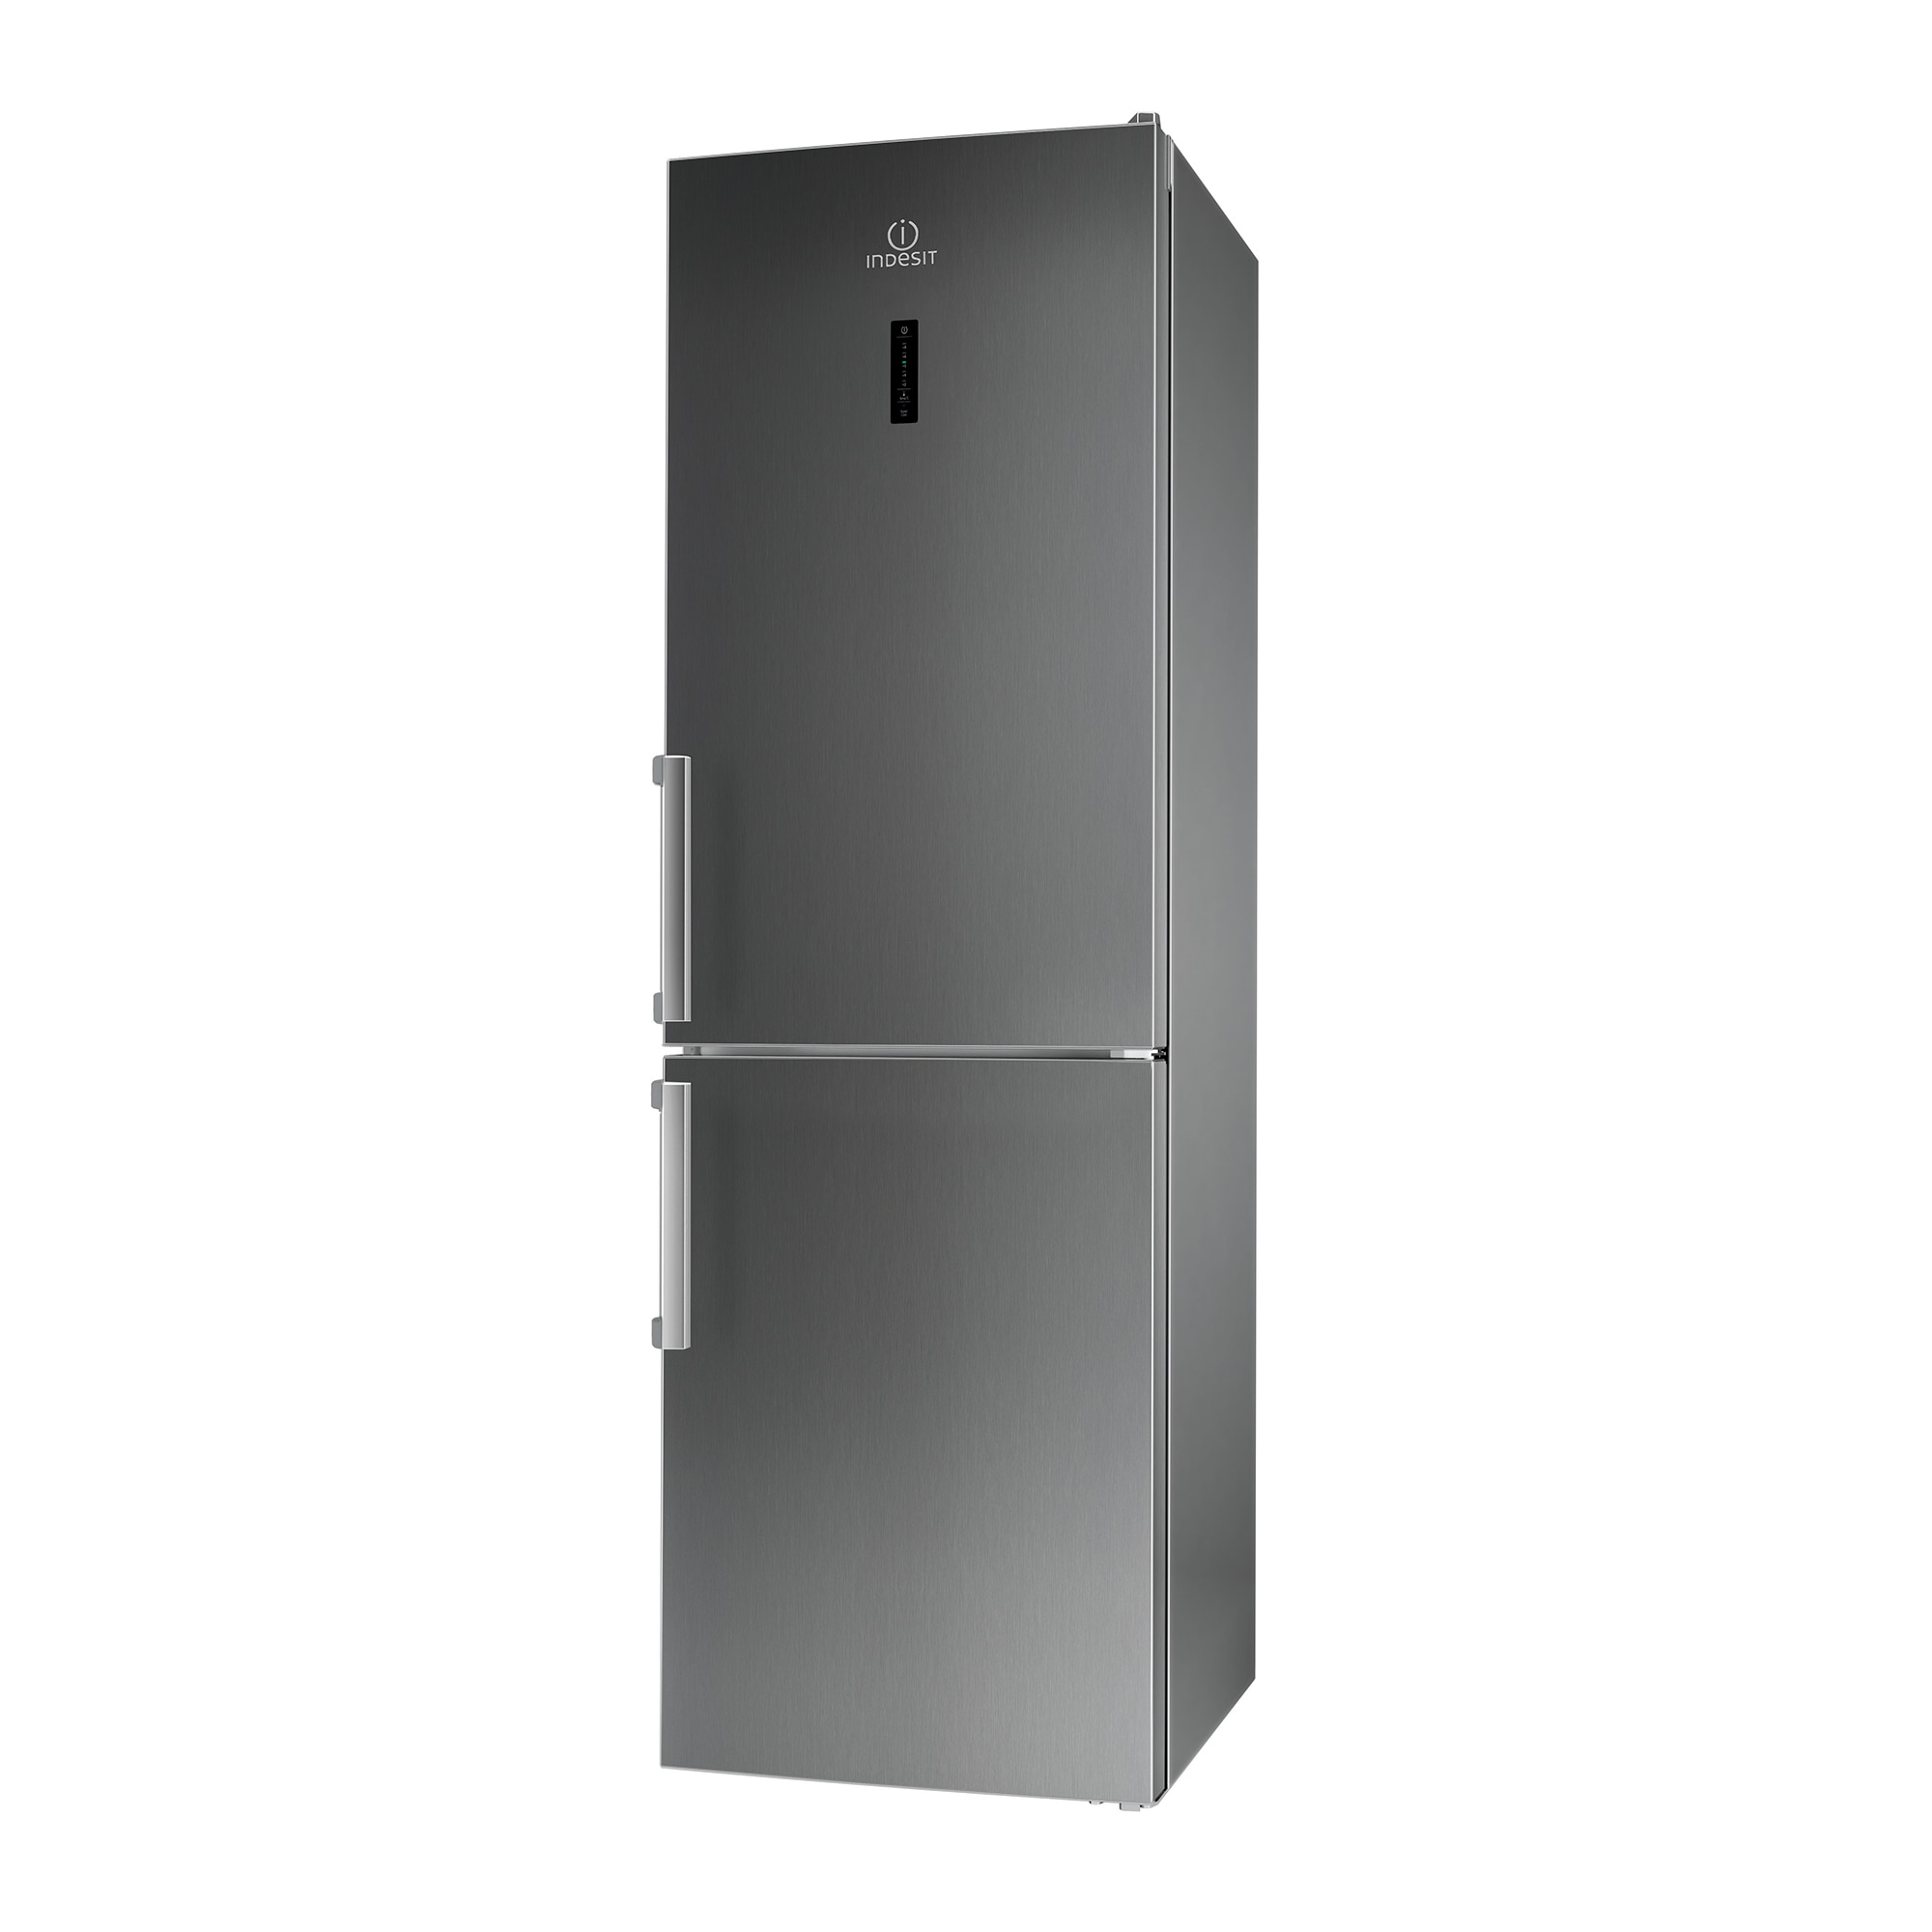 Хладилник Indesit XI9 T1O X H с обем от 264 л.